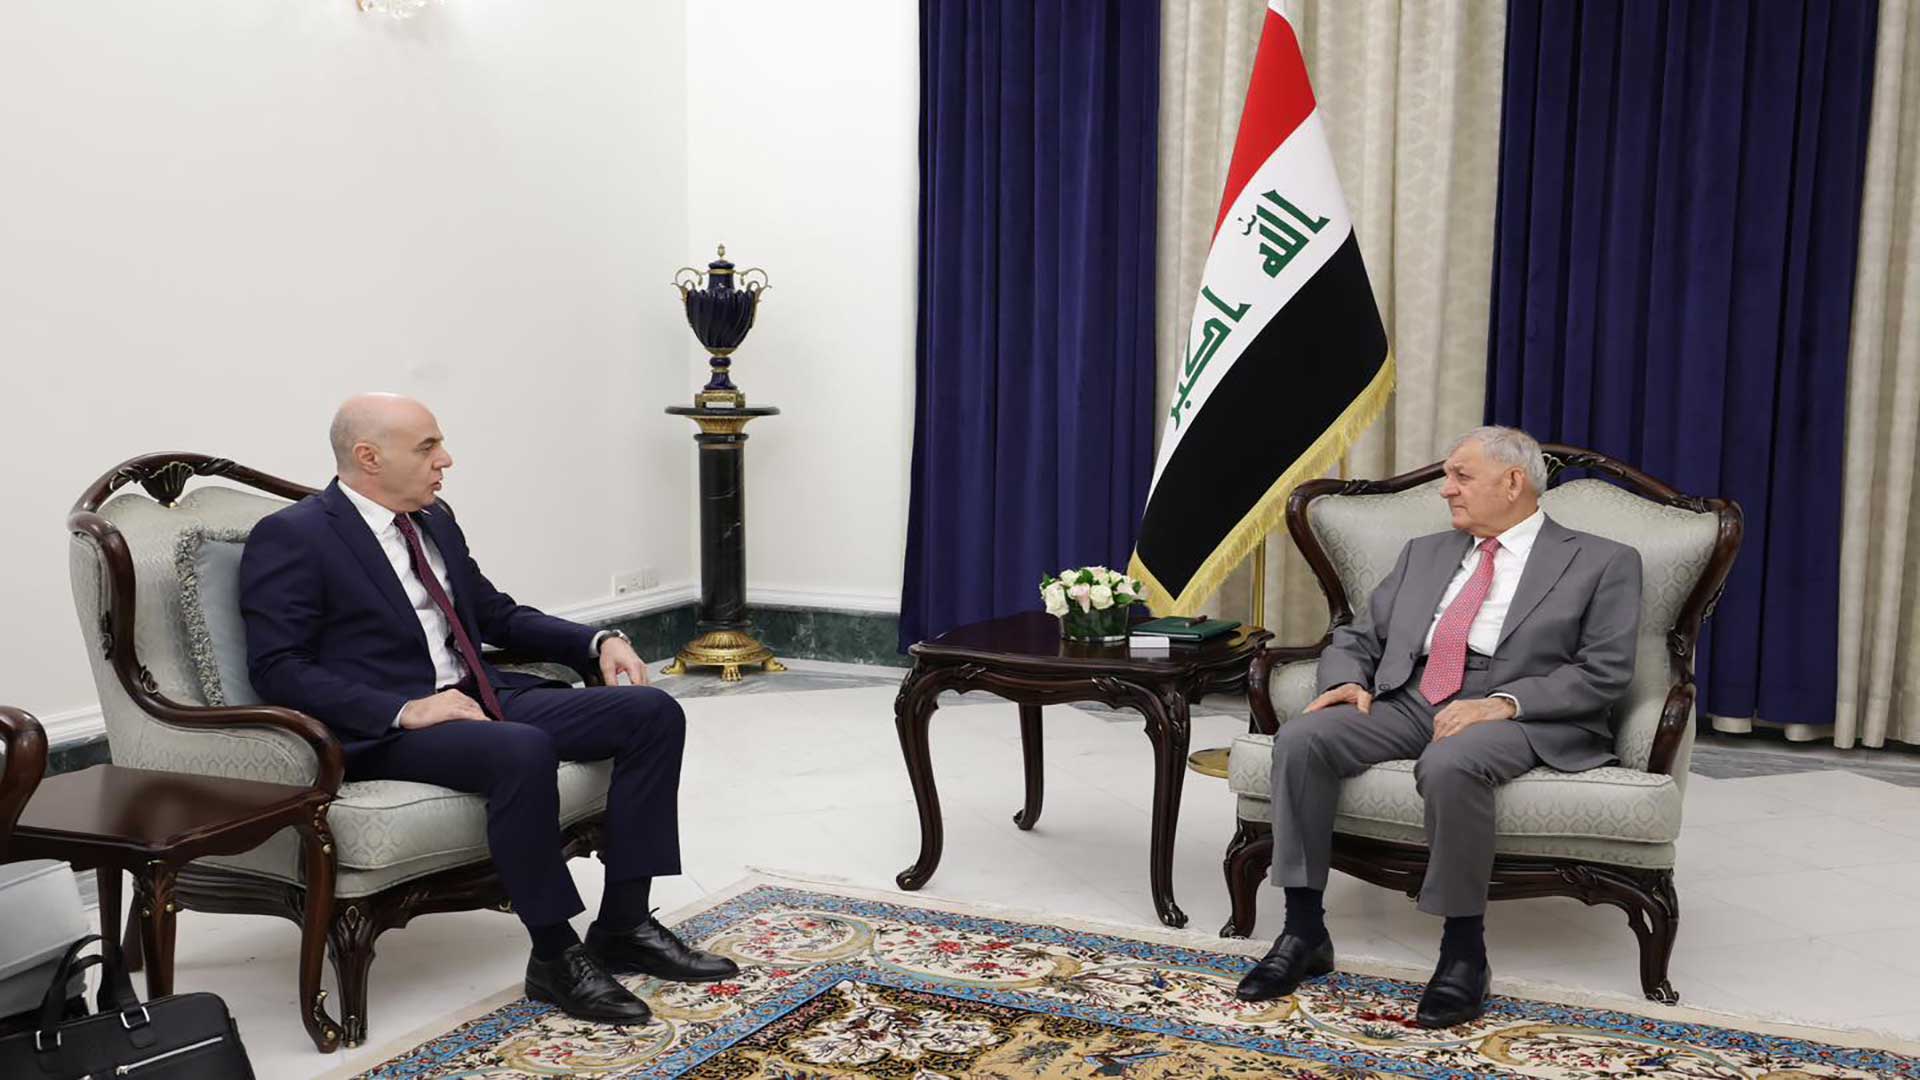  Iraqi President Abdullatif Jamal Rashid on the right and Turkish Ambassador Ali Reza Guney on the left.